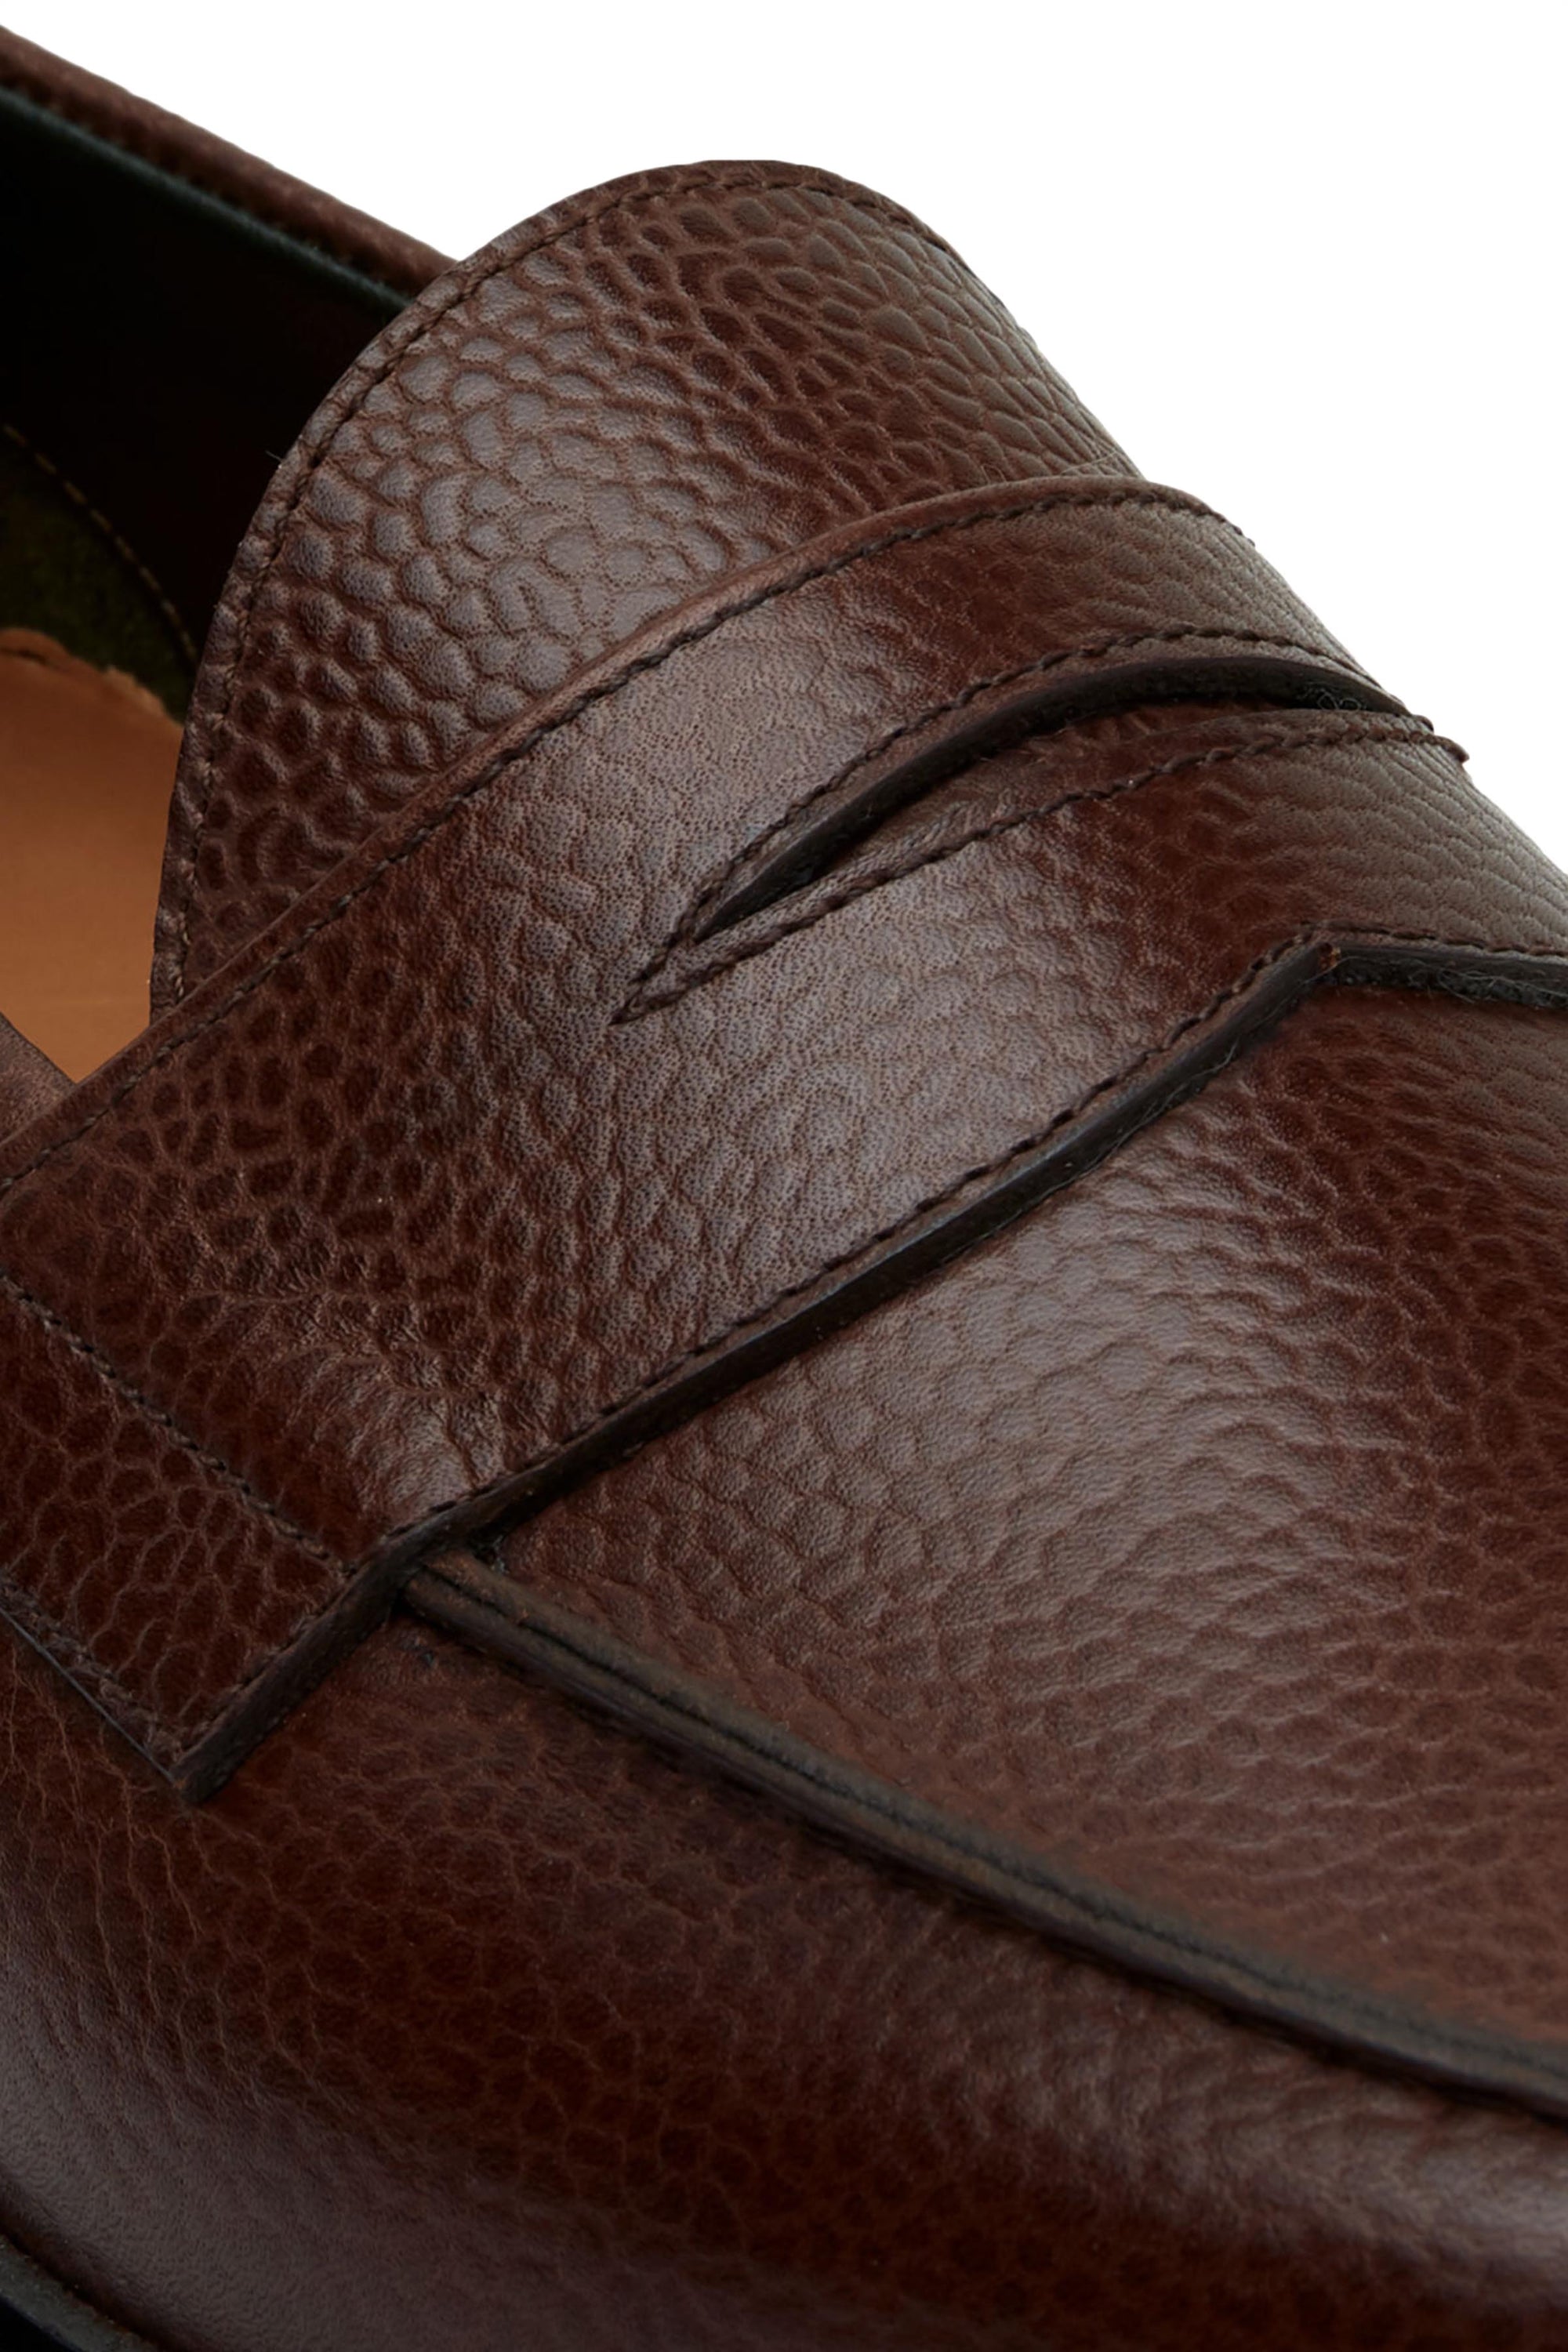 Paris I - Black patent leather loafers with gold horsebit, men's shoes – di  Virgilio Shoes